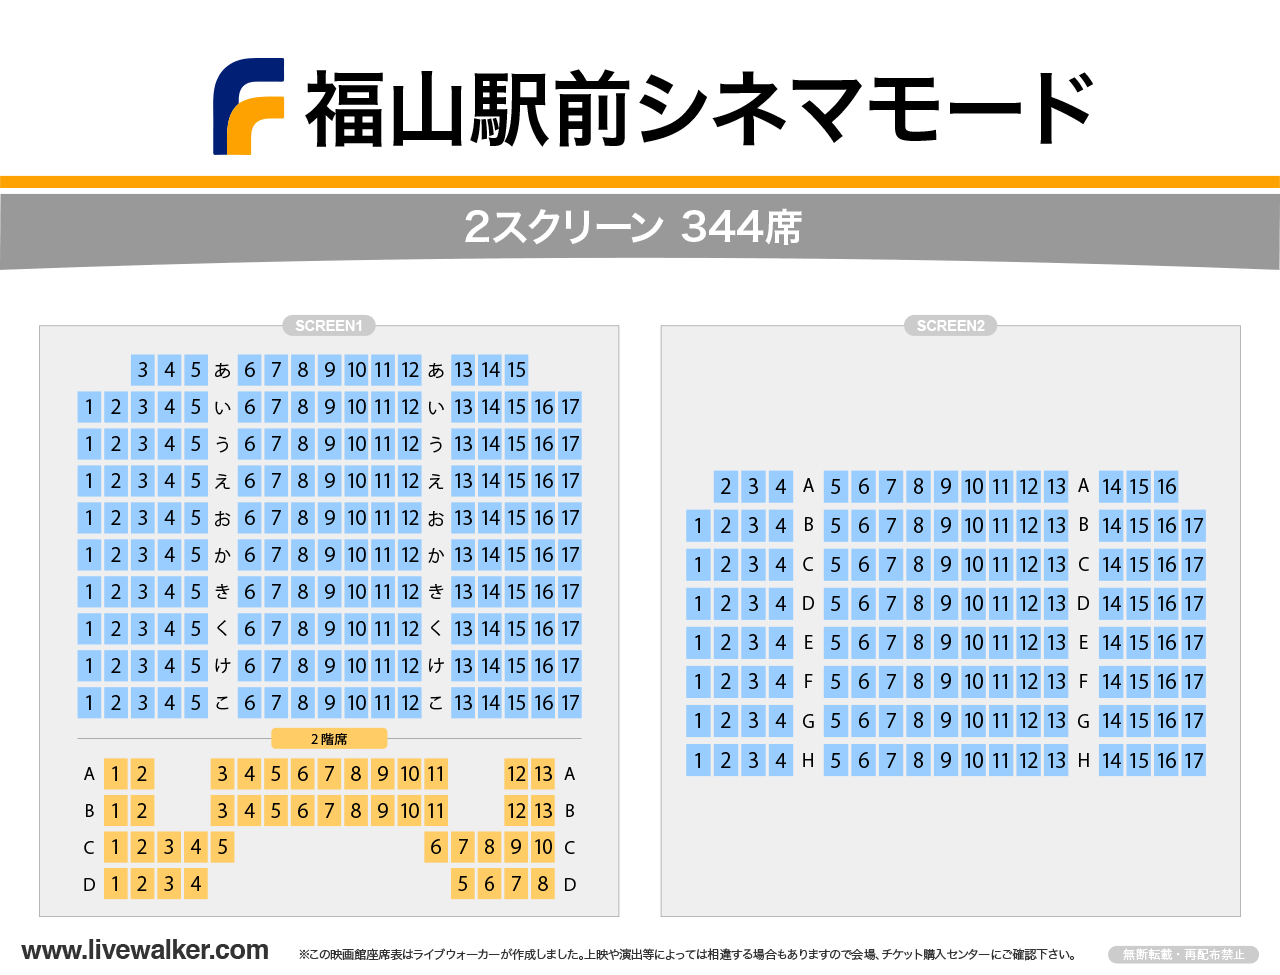 福山駅前シネマモードシネマモードの座席表